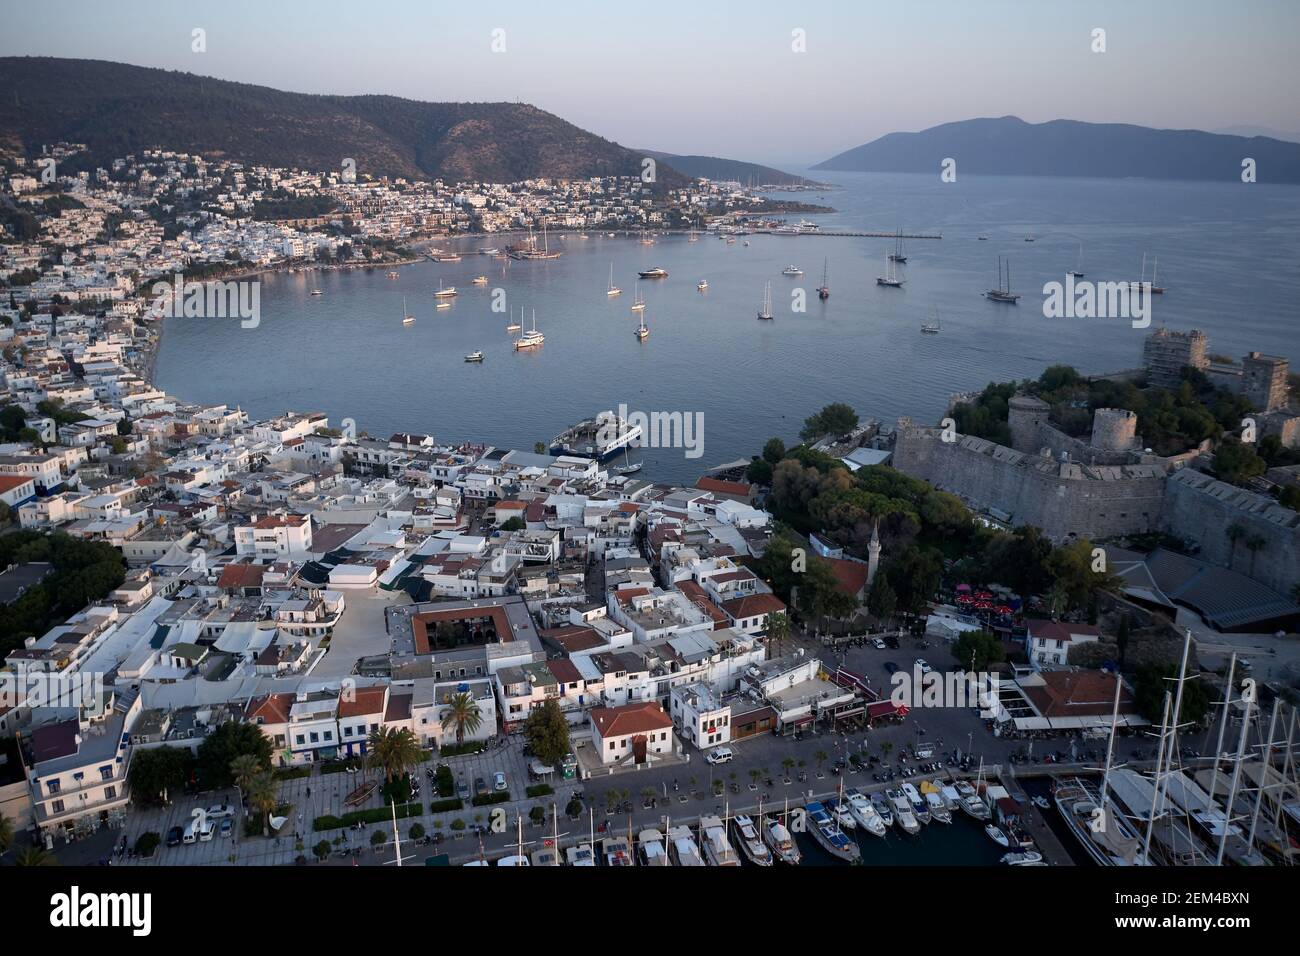 Panoramic view of resort town of Bodrum, Turkey. Stock Photo